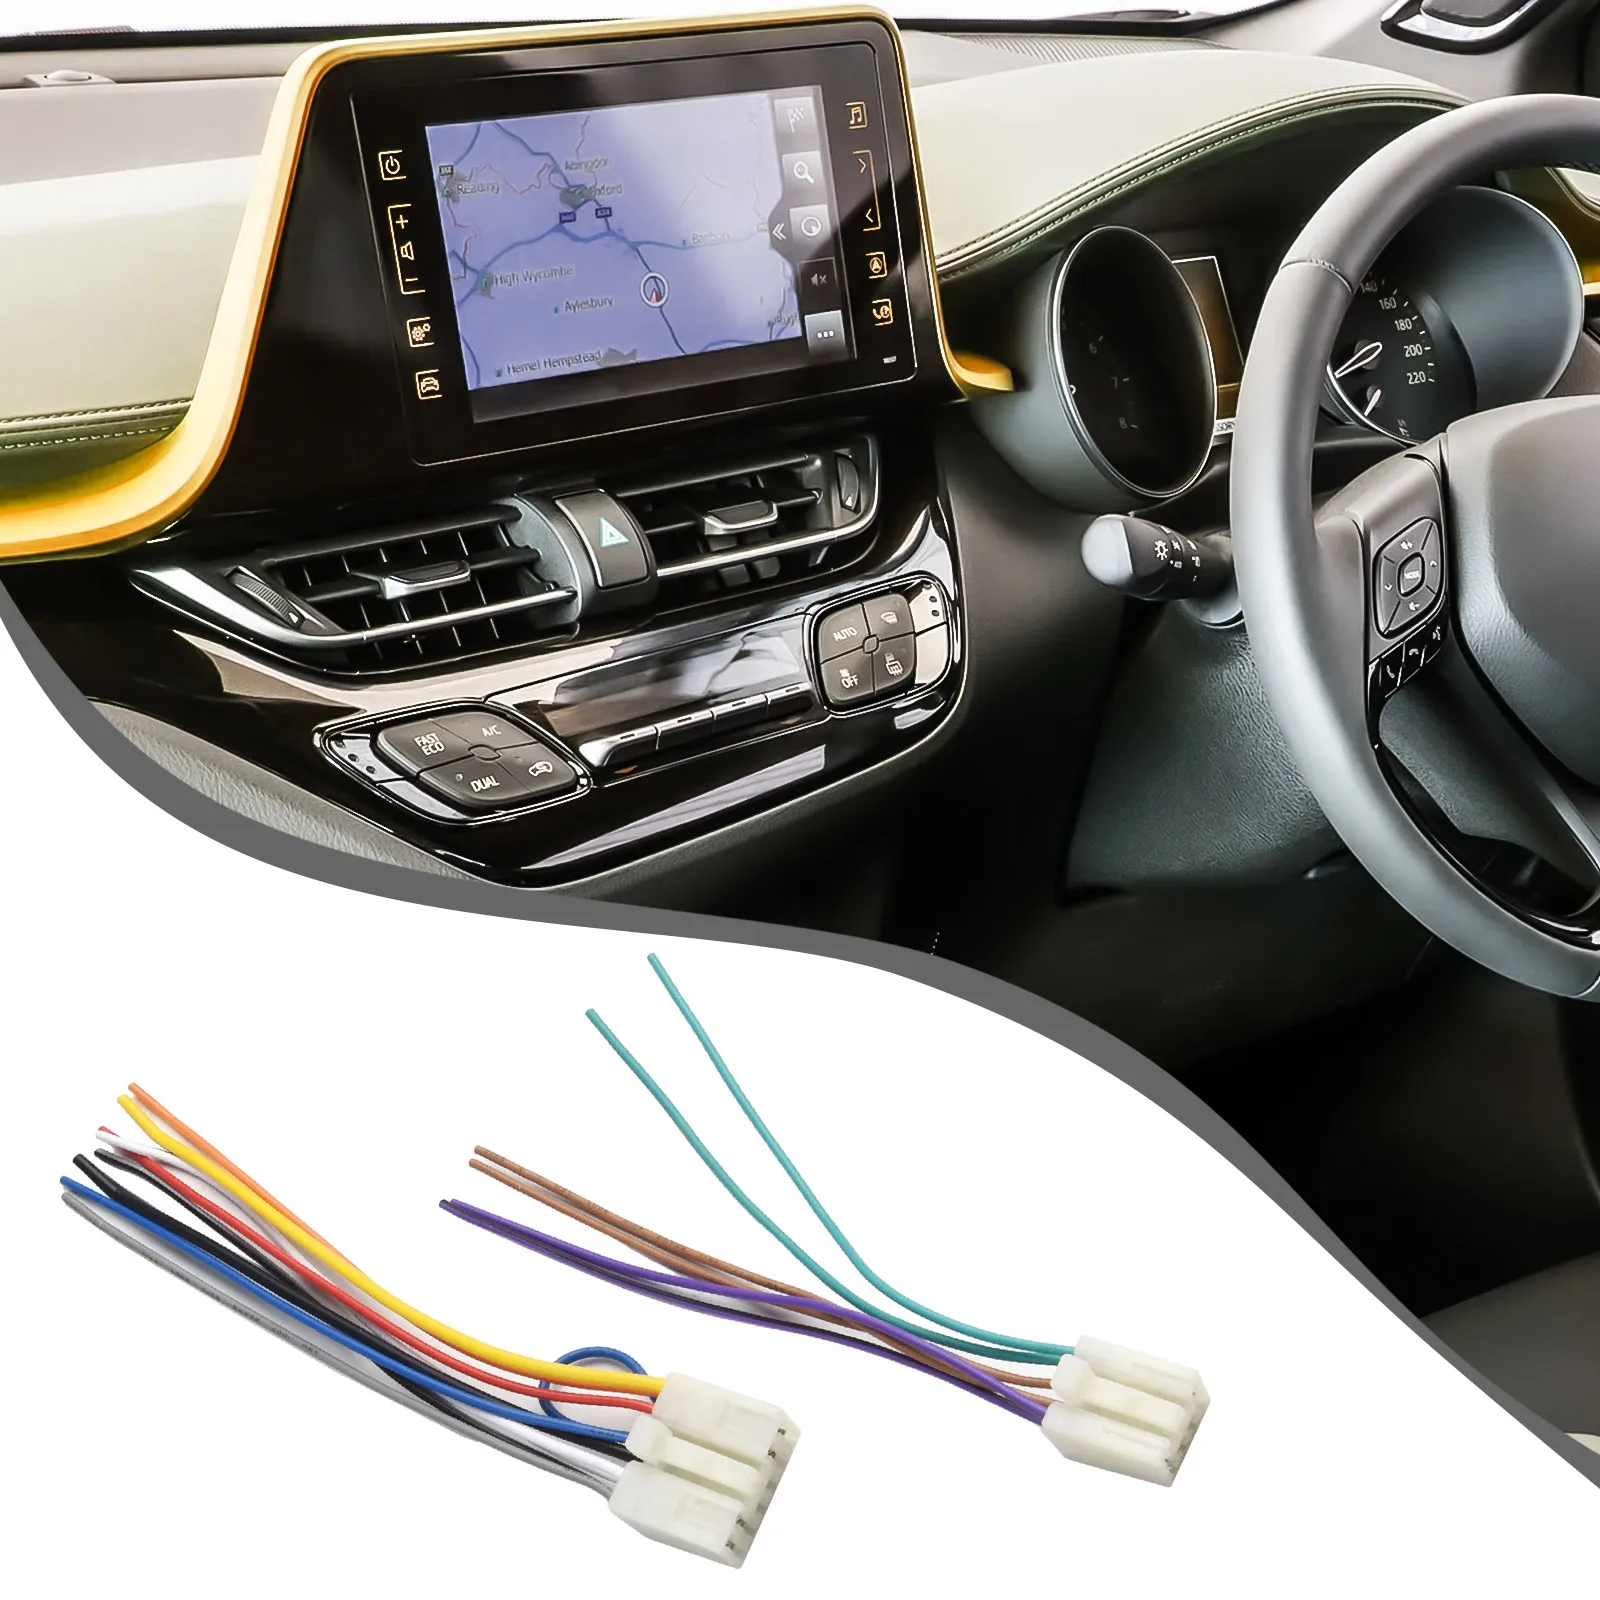 Univerzálne Uchytenie Auto Drôty Vedenia kábel Kábel Adaptéra pre Toyota Aftermarket Rádio Stereo Zabezpečuje Rýchle a bezproblémová Inštalácia0